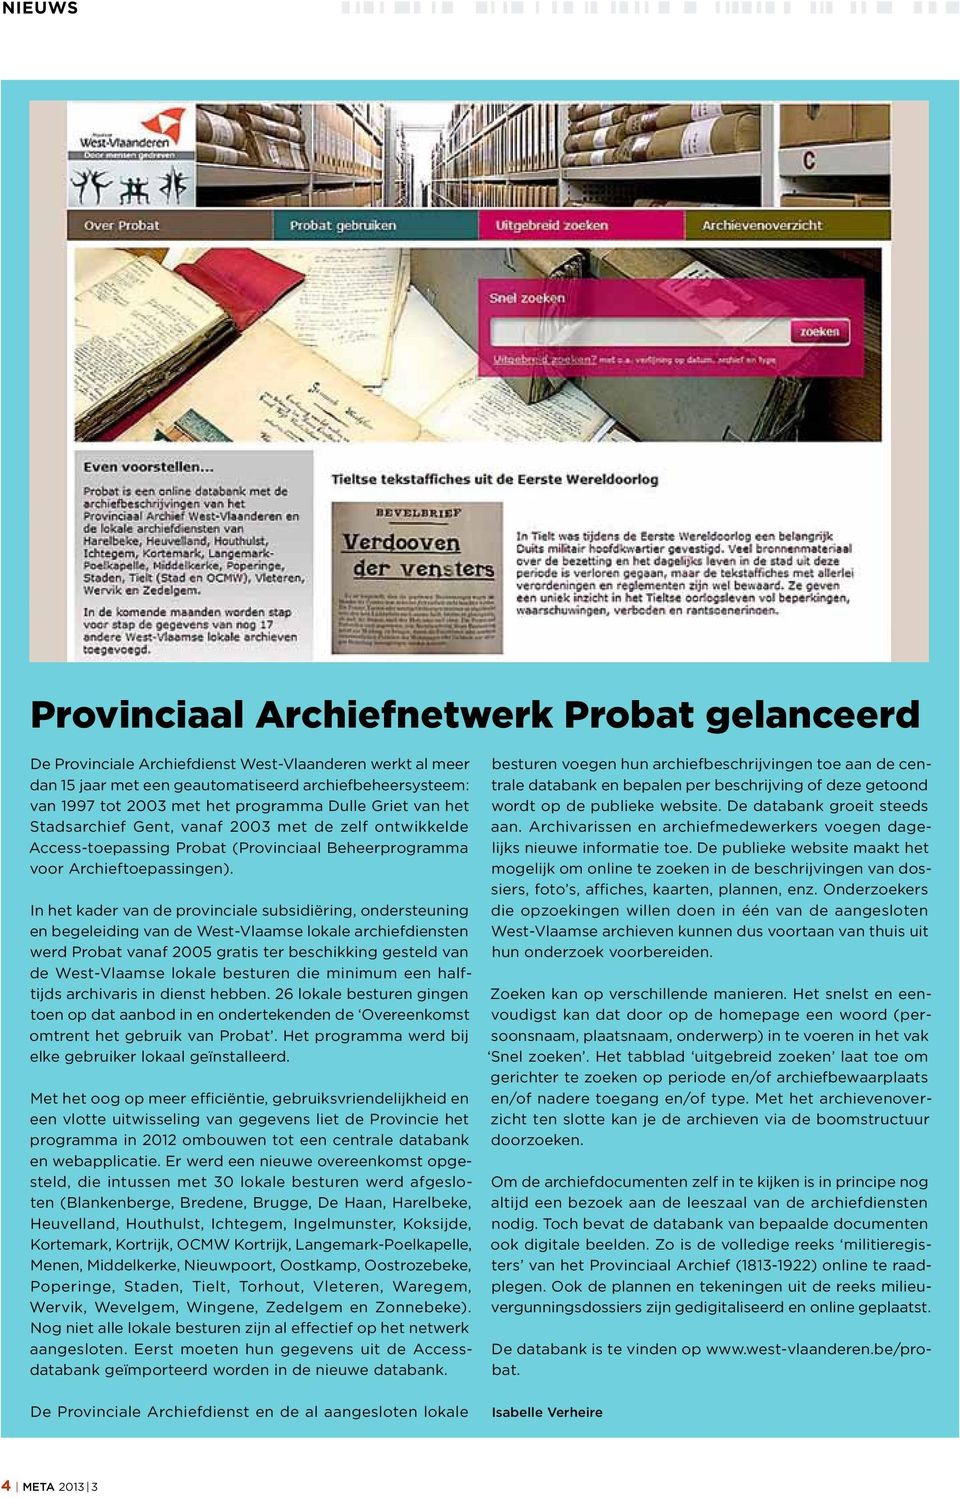 In het kader van de provinciale subsidiëring, ondersteuning en begeleiding van de West-Vlaamse lokale archiefdiensten werd Probat vanaf 2005 gratis ter beschikking gesteld van de West-Vlaamse lokale